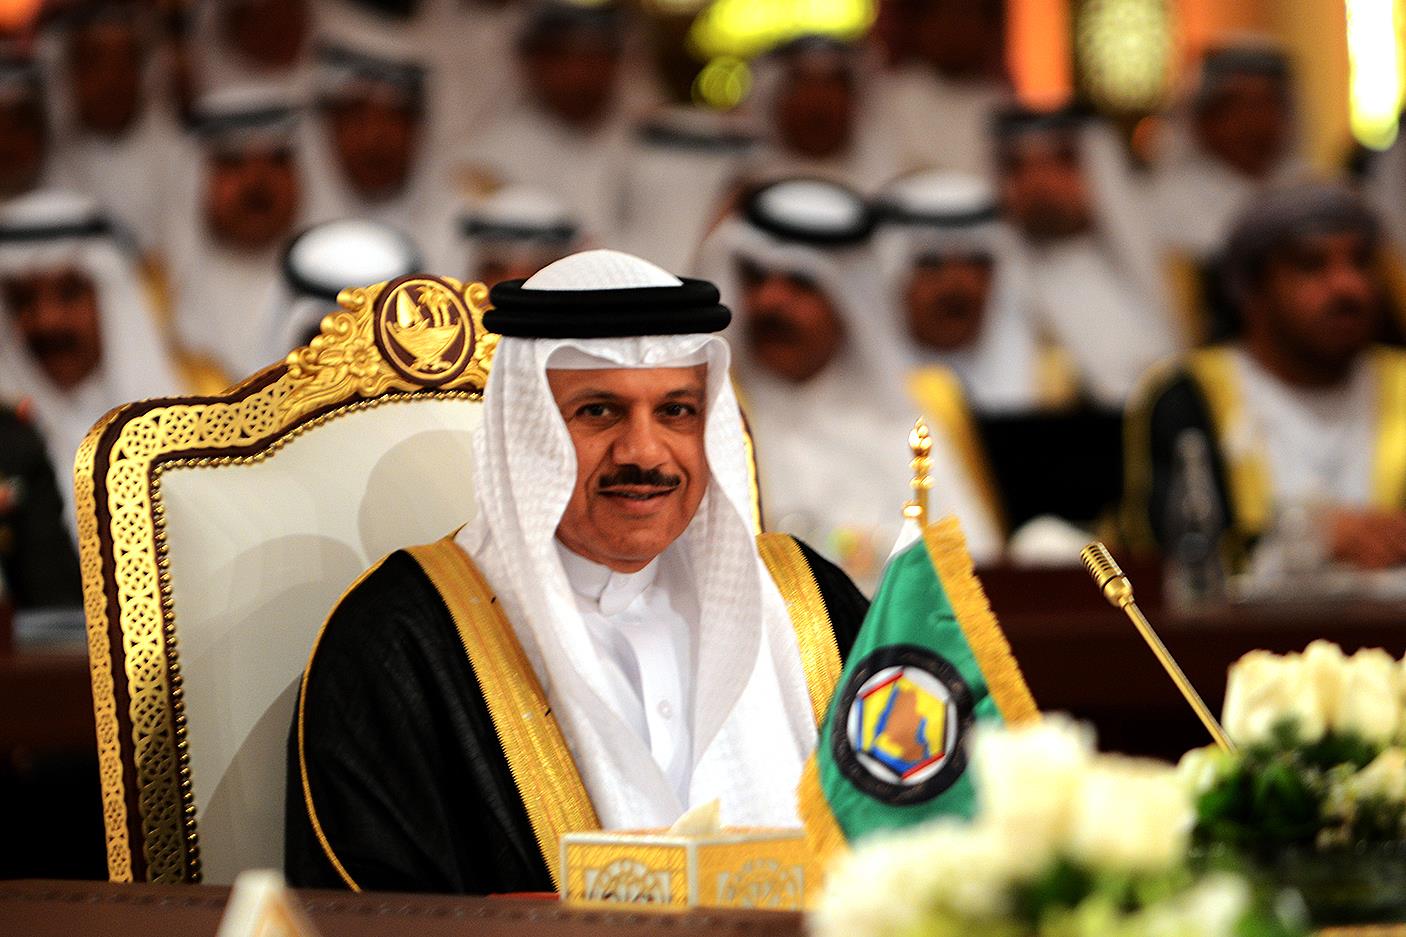  Secretary General of the Gulf Cooperation Council (GCC) Dr. Abdullatif Al-Zayani